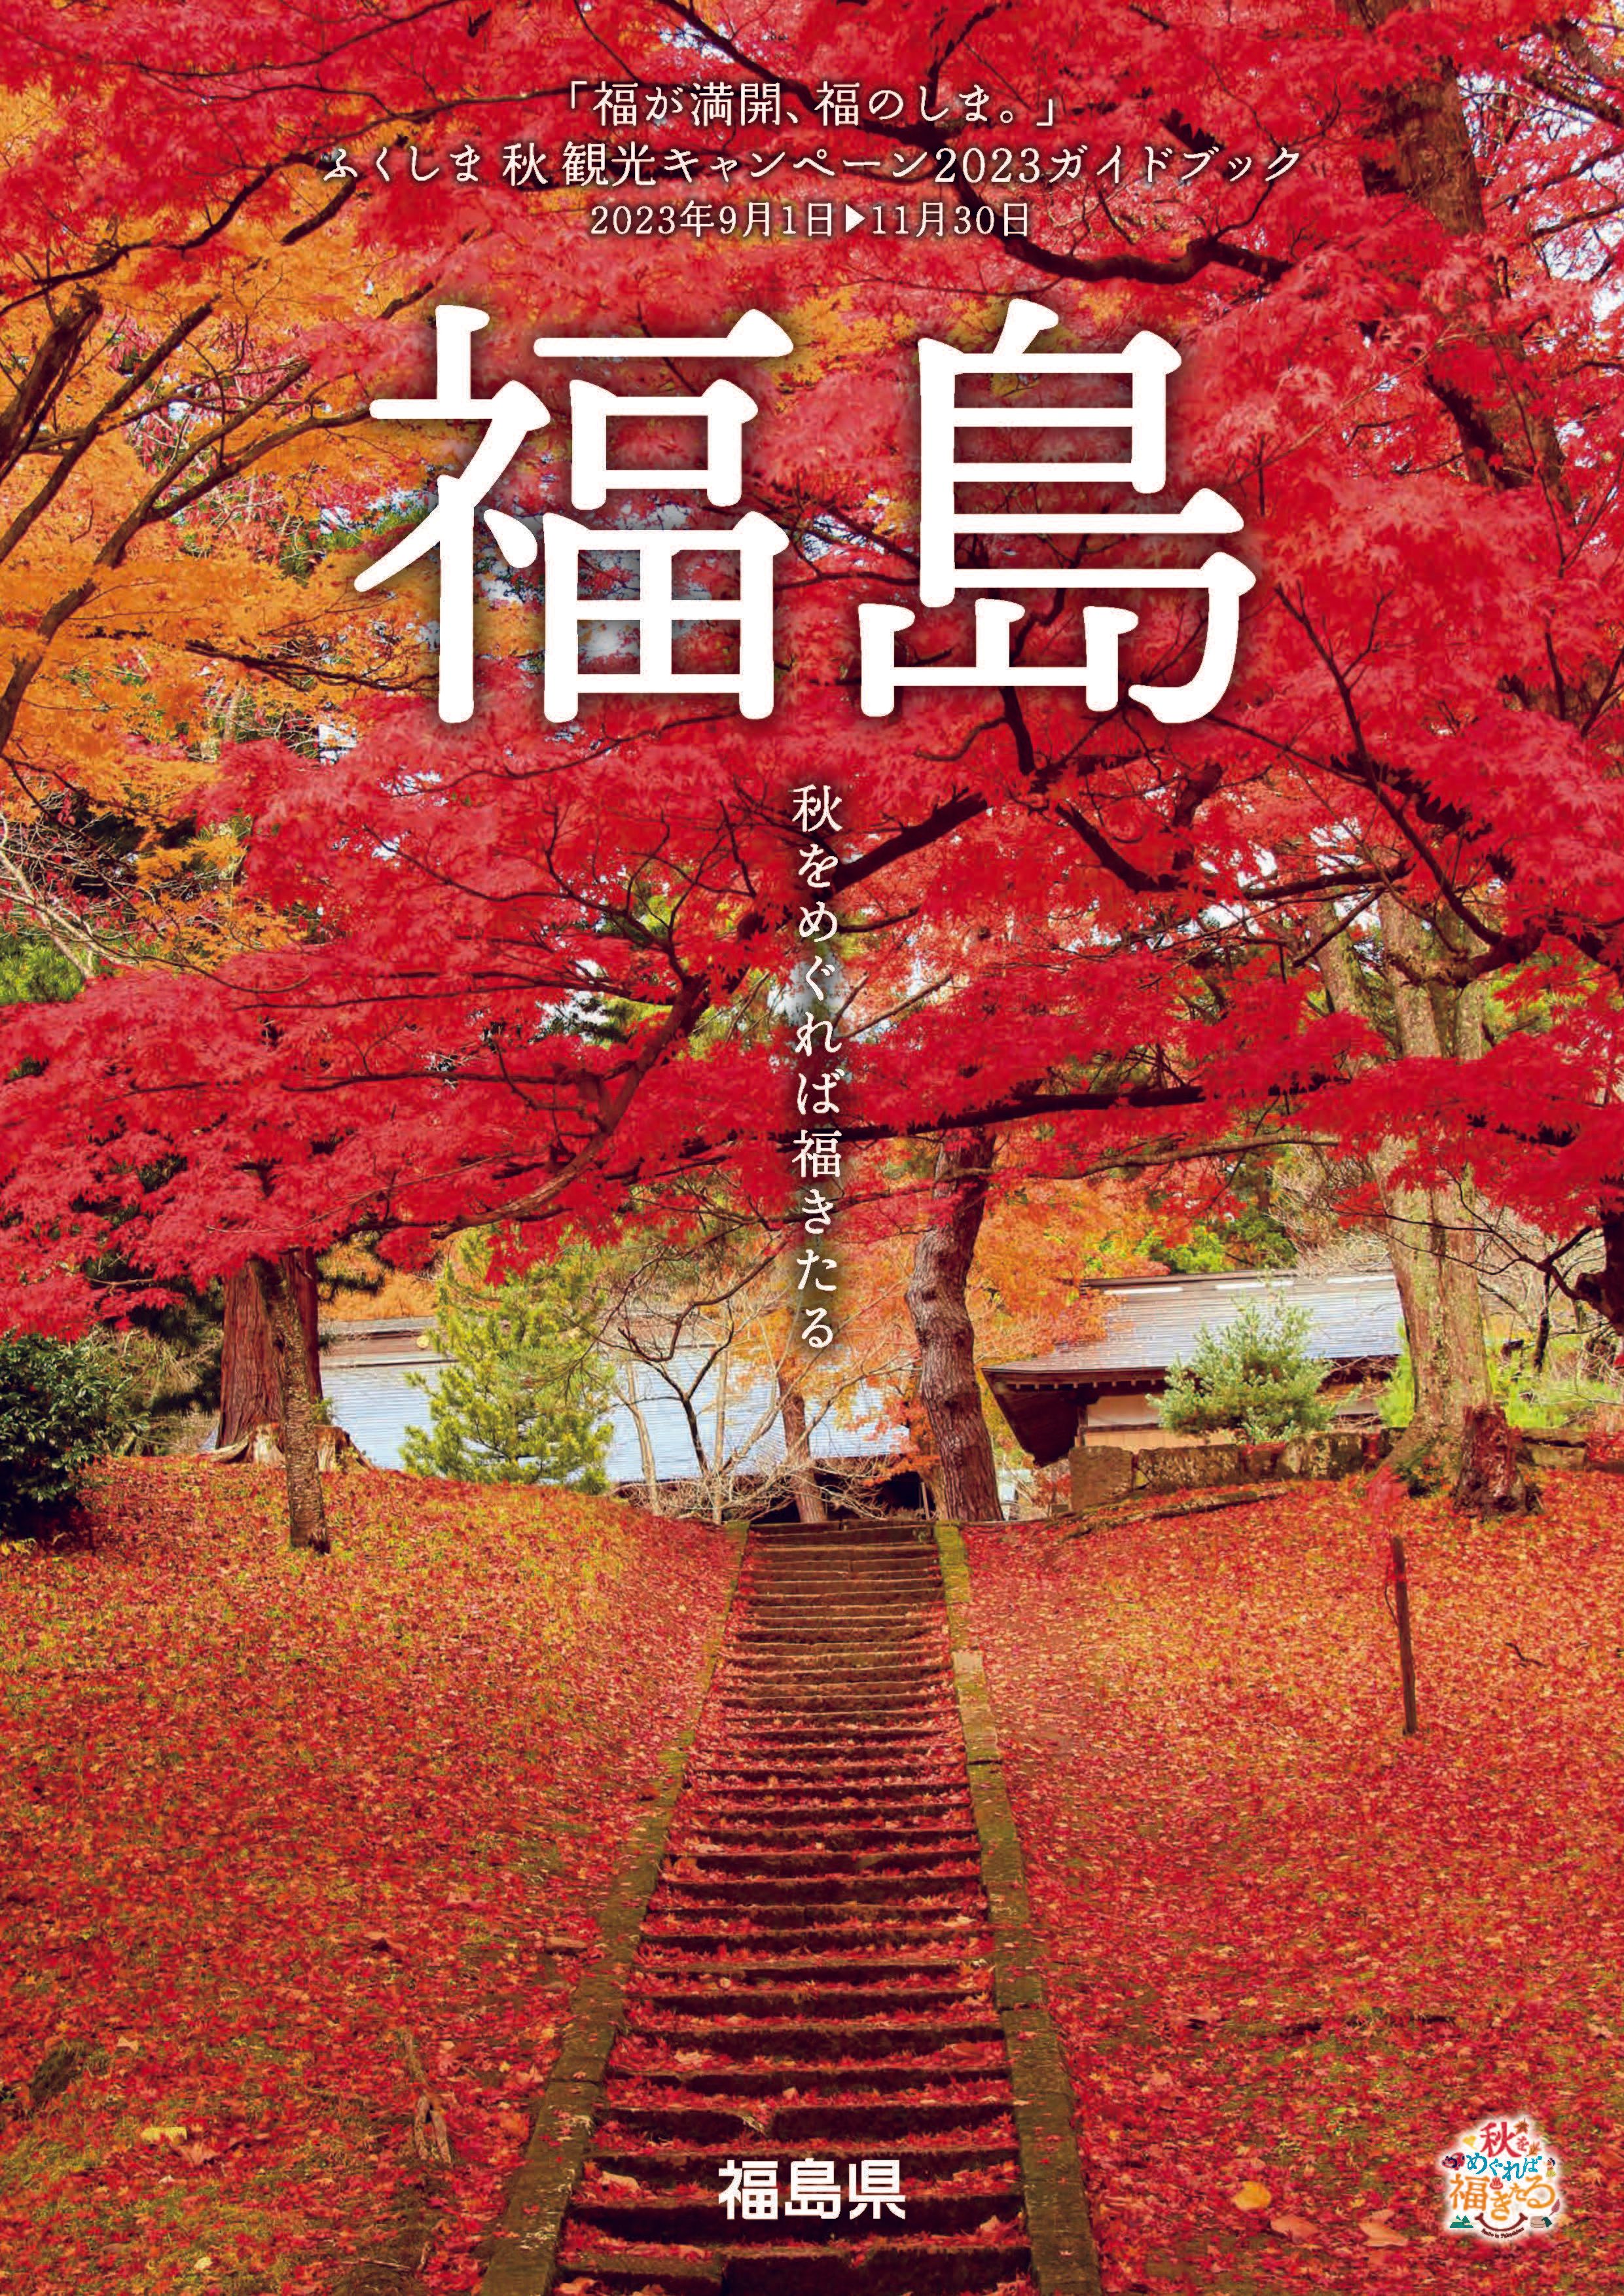 ふくしま秋観光キャンペーン2023ガイドブック